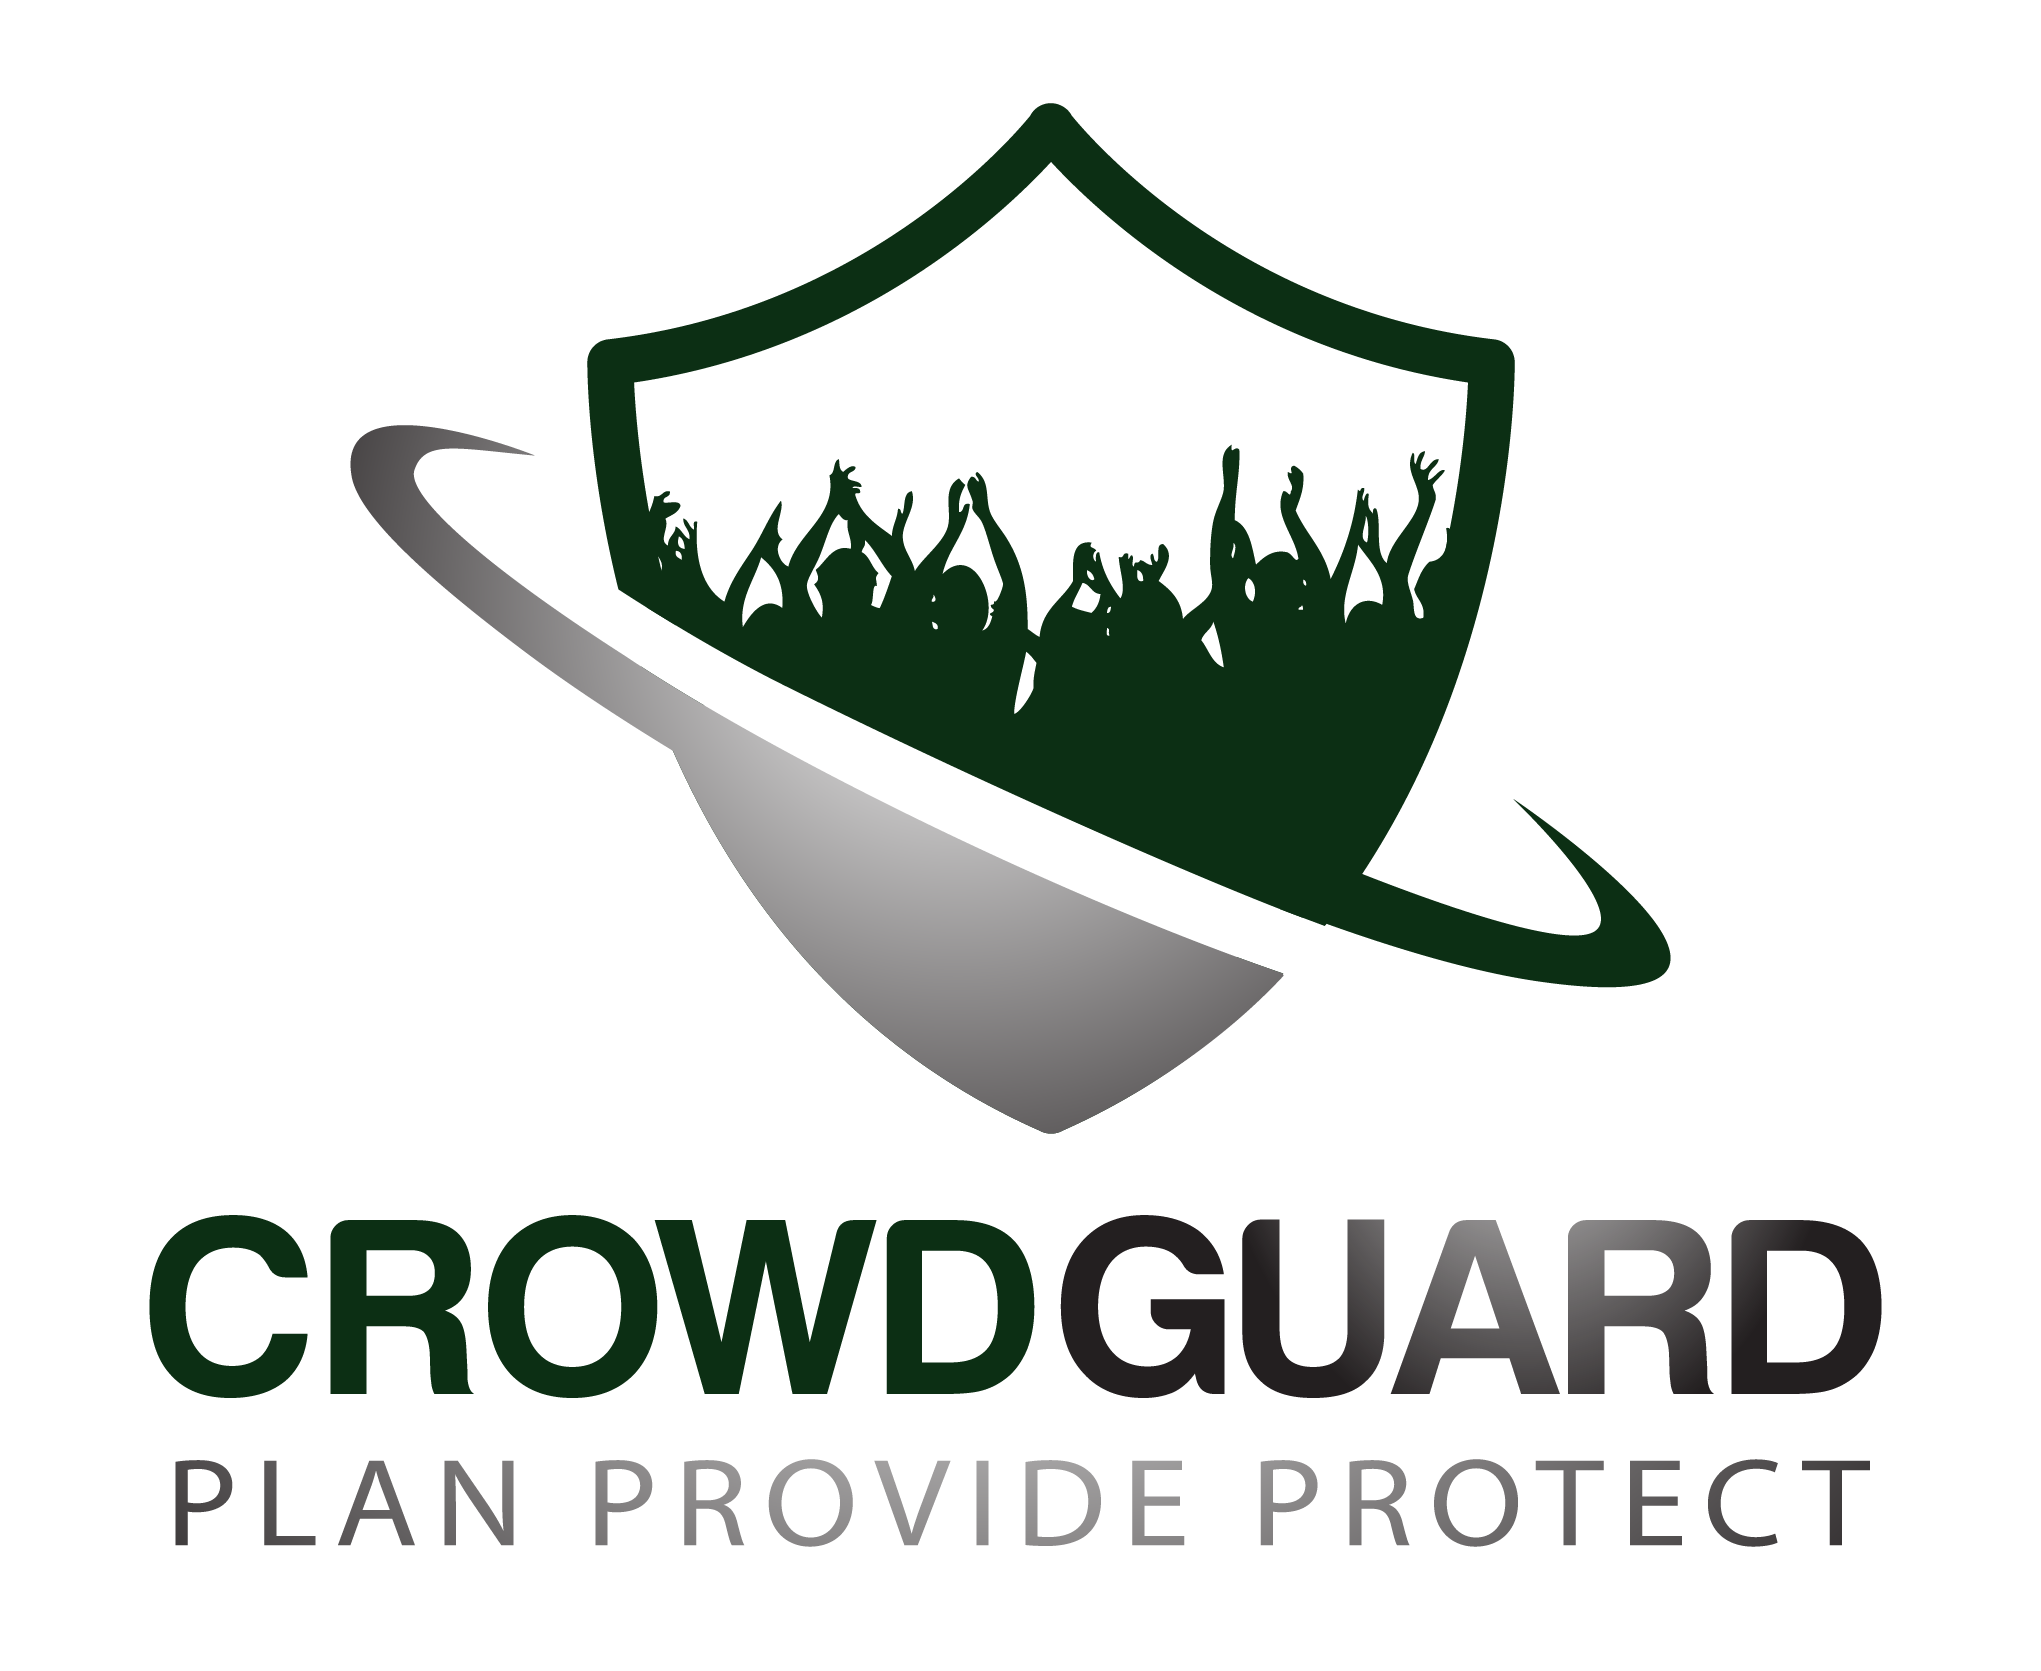 Crowdguard